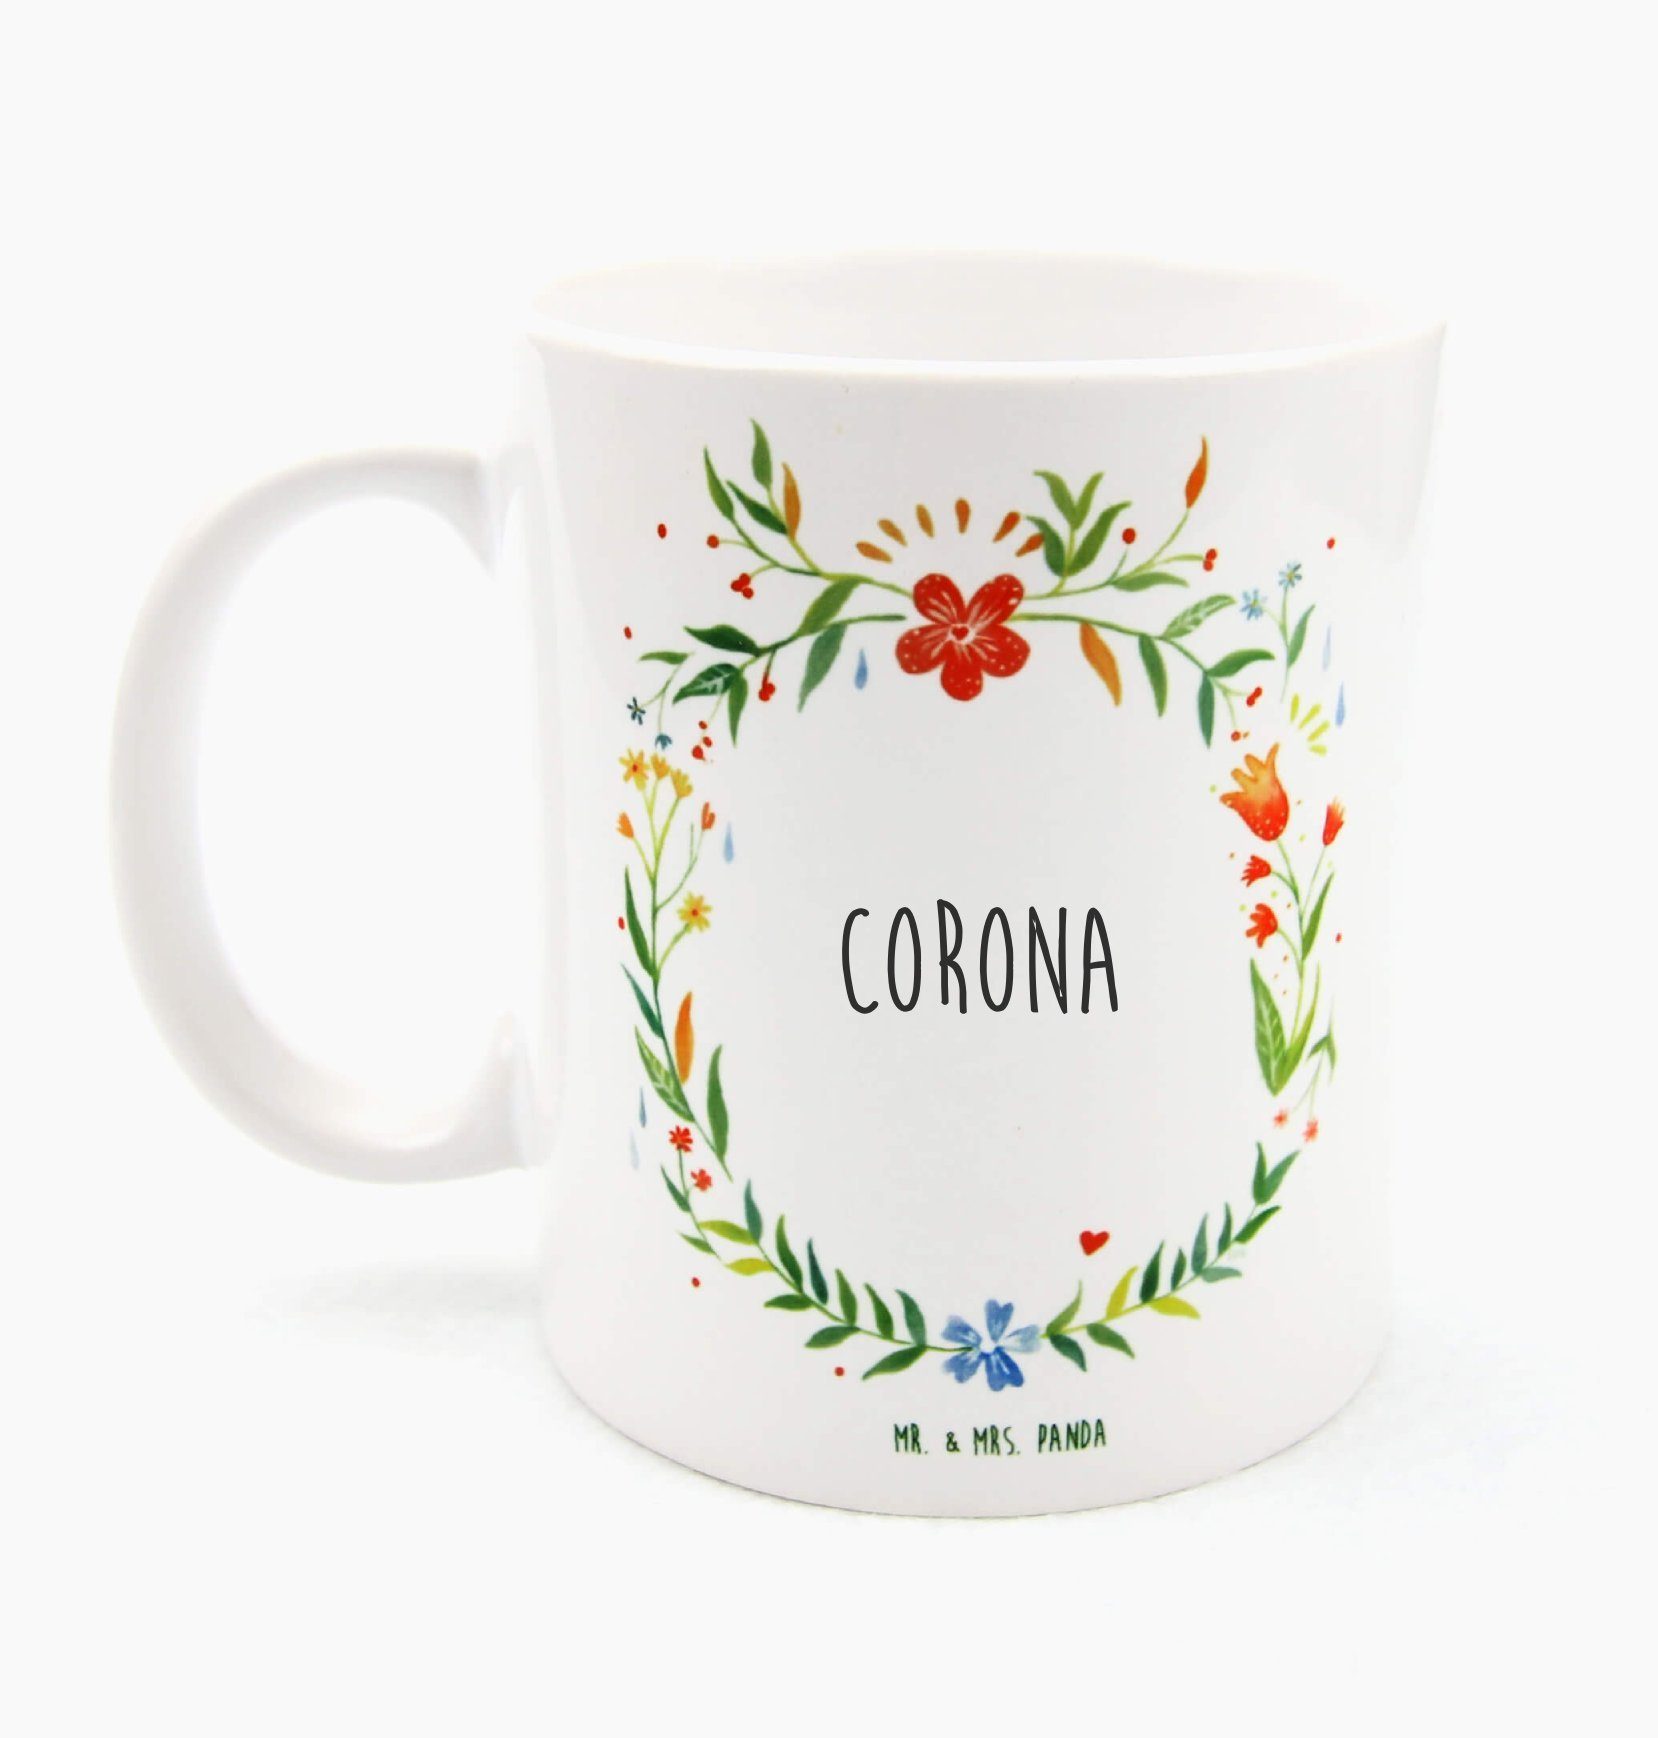 Mr. & Mrs. Panda Tasse Corona - Geschenk, Geschenk Tasse, Kaffeetasse, Porzellantasse, Teebe, Keramik